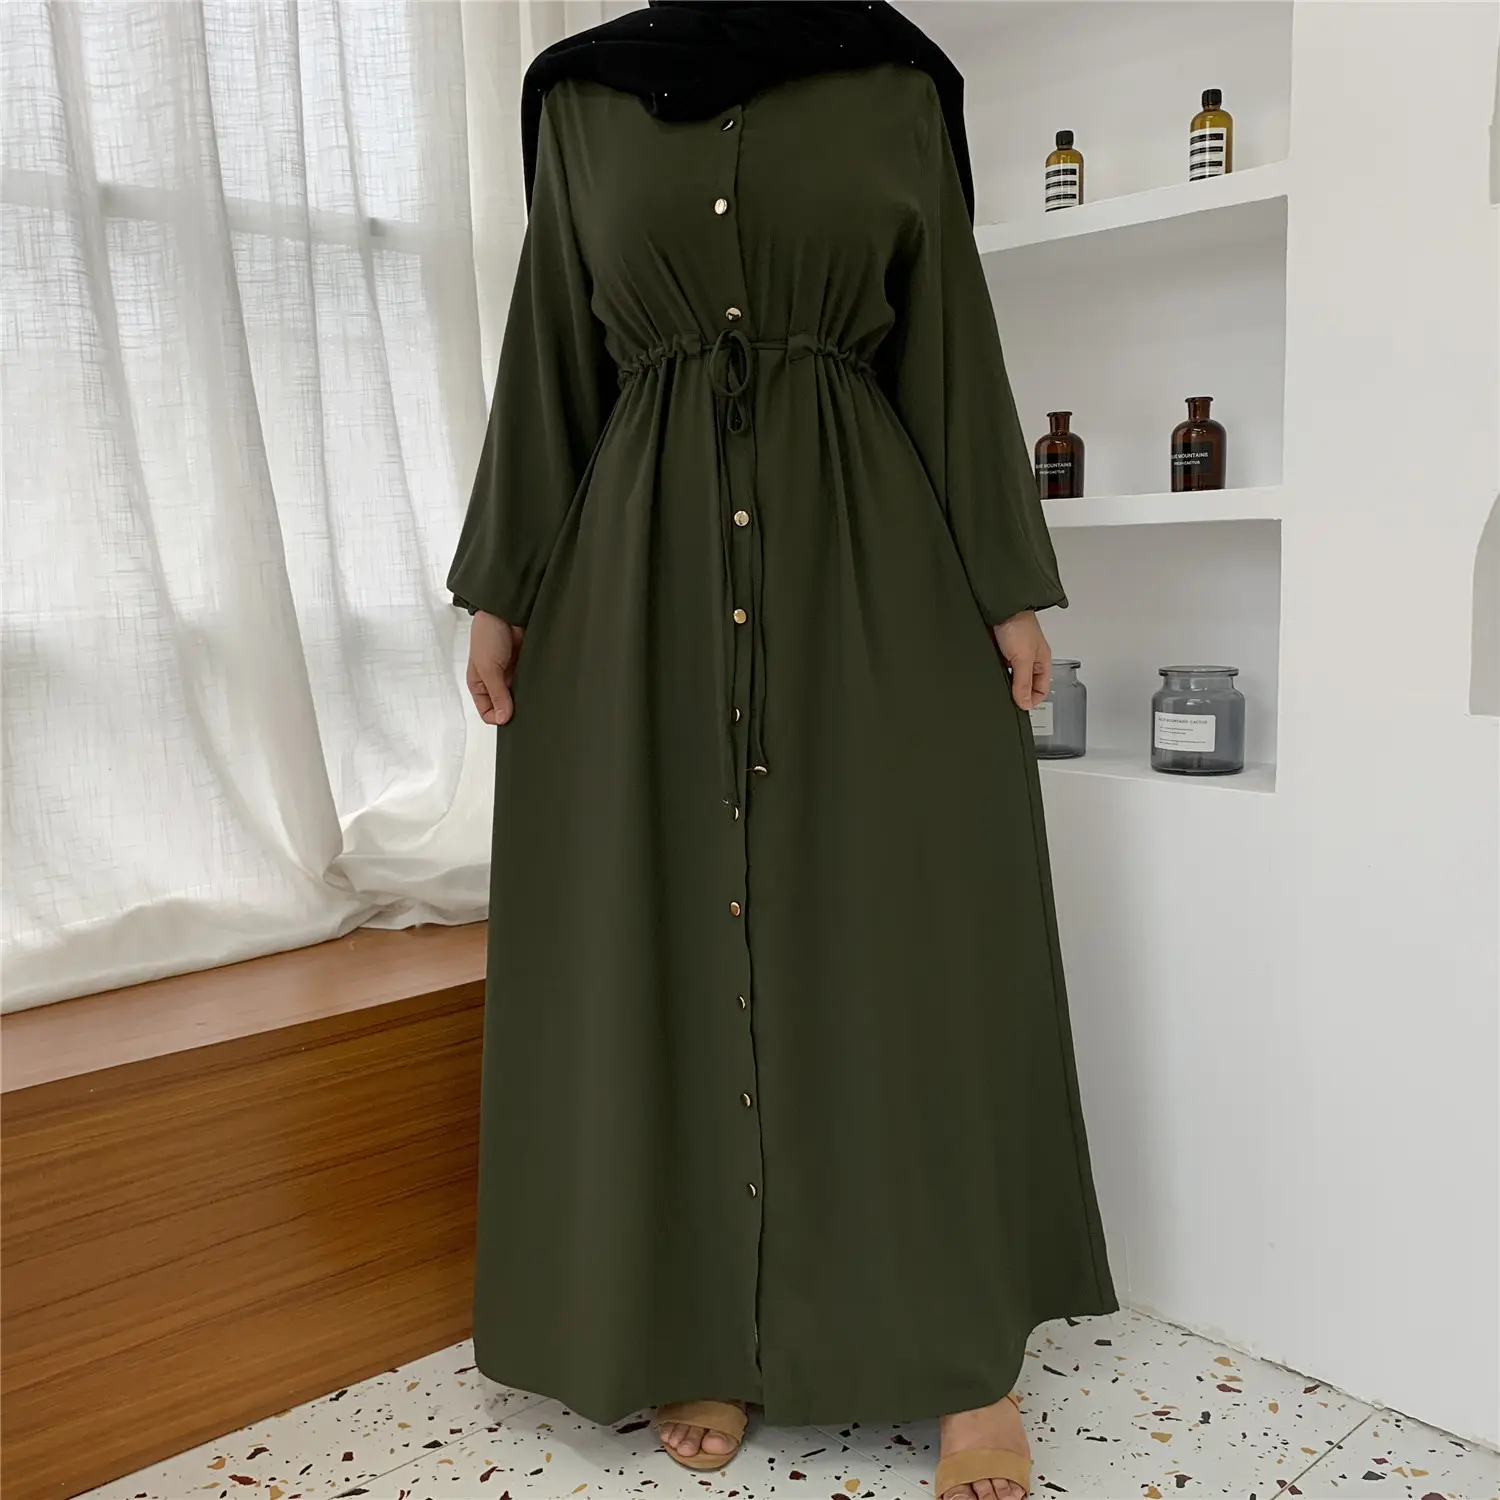 C-82 Dubai arabo medio oriente vestiti islamici donne abito da sera musulmano di alta qualità Abaya Dubait donne abiti musulmani